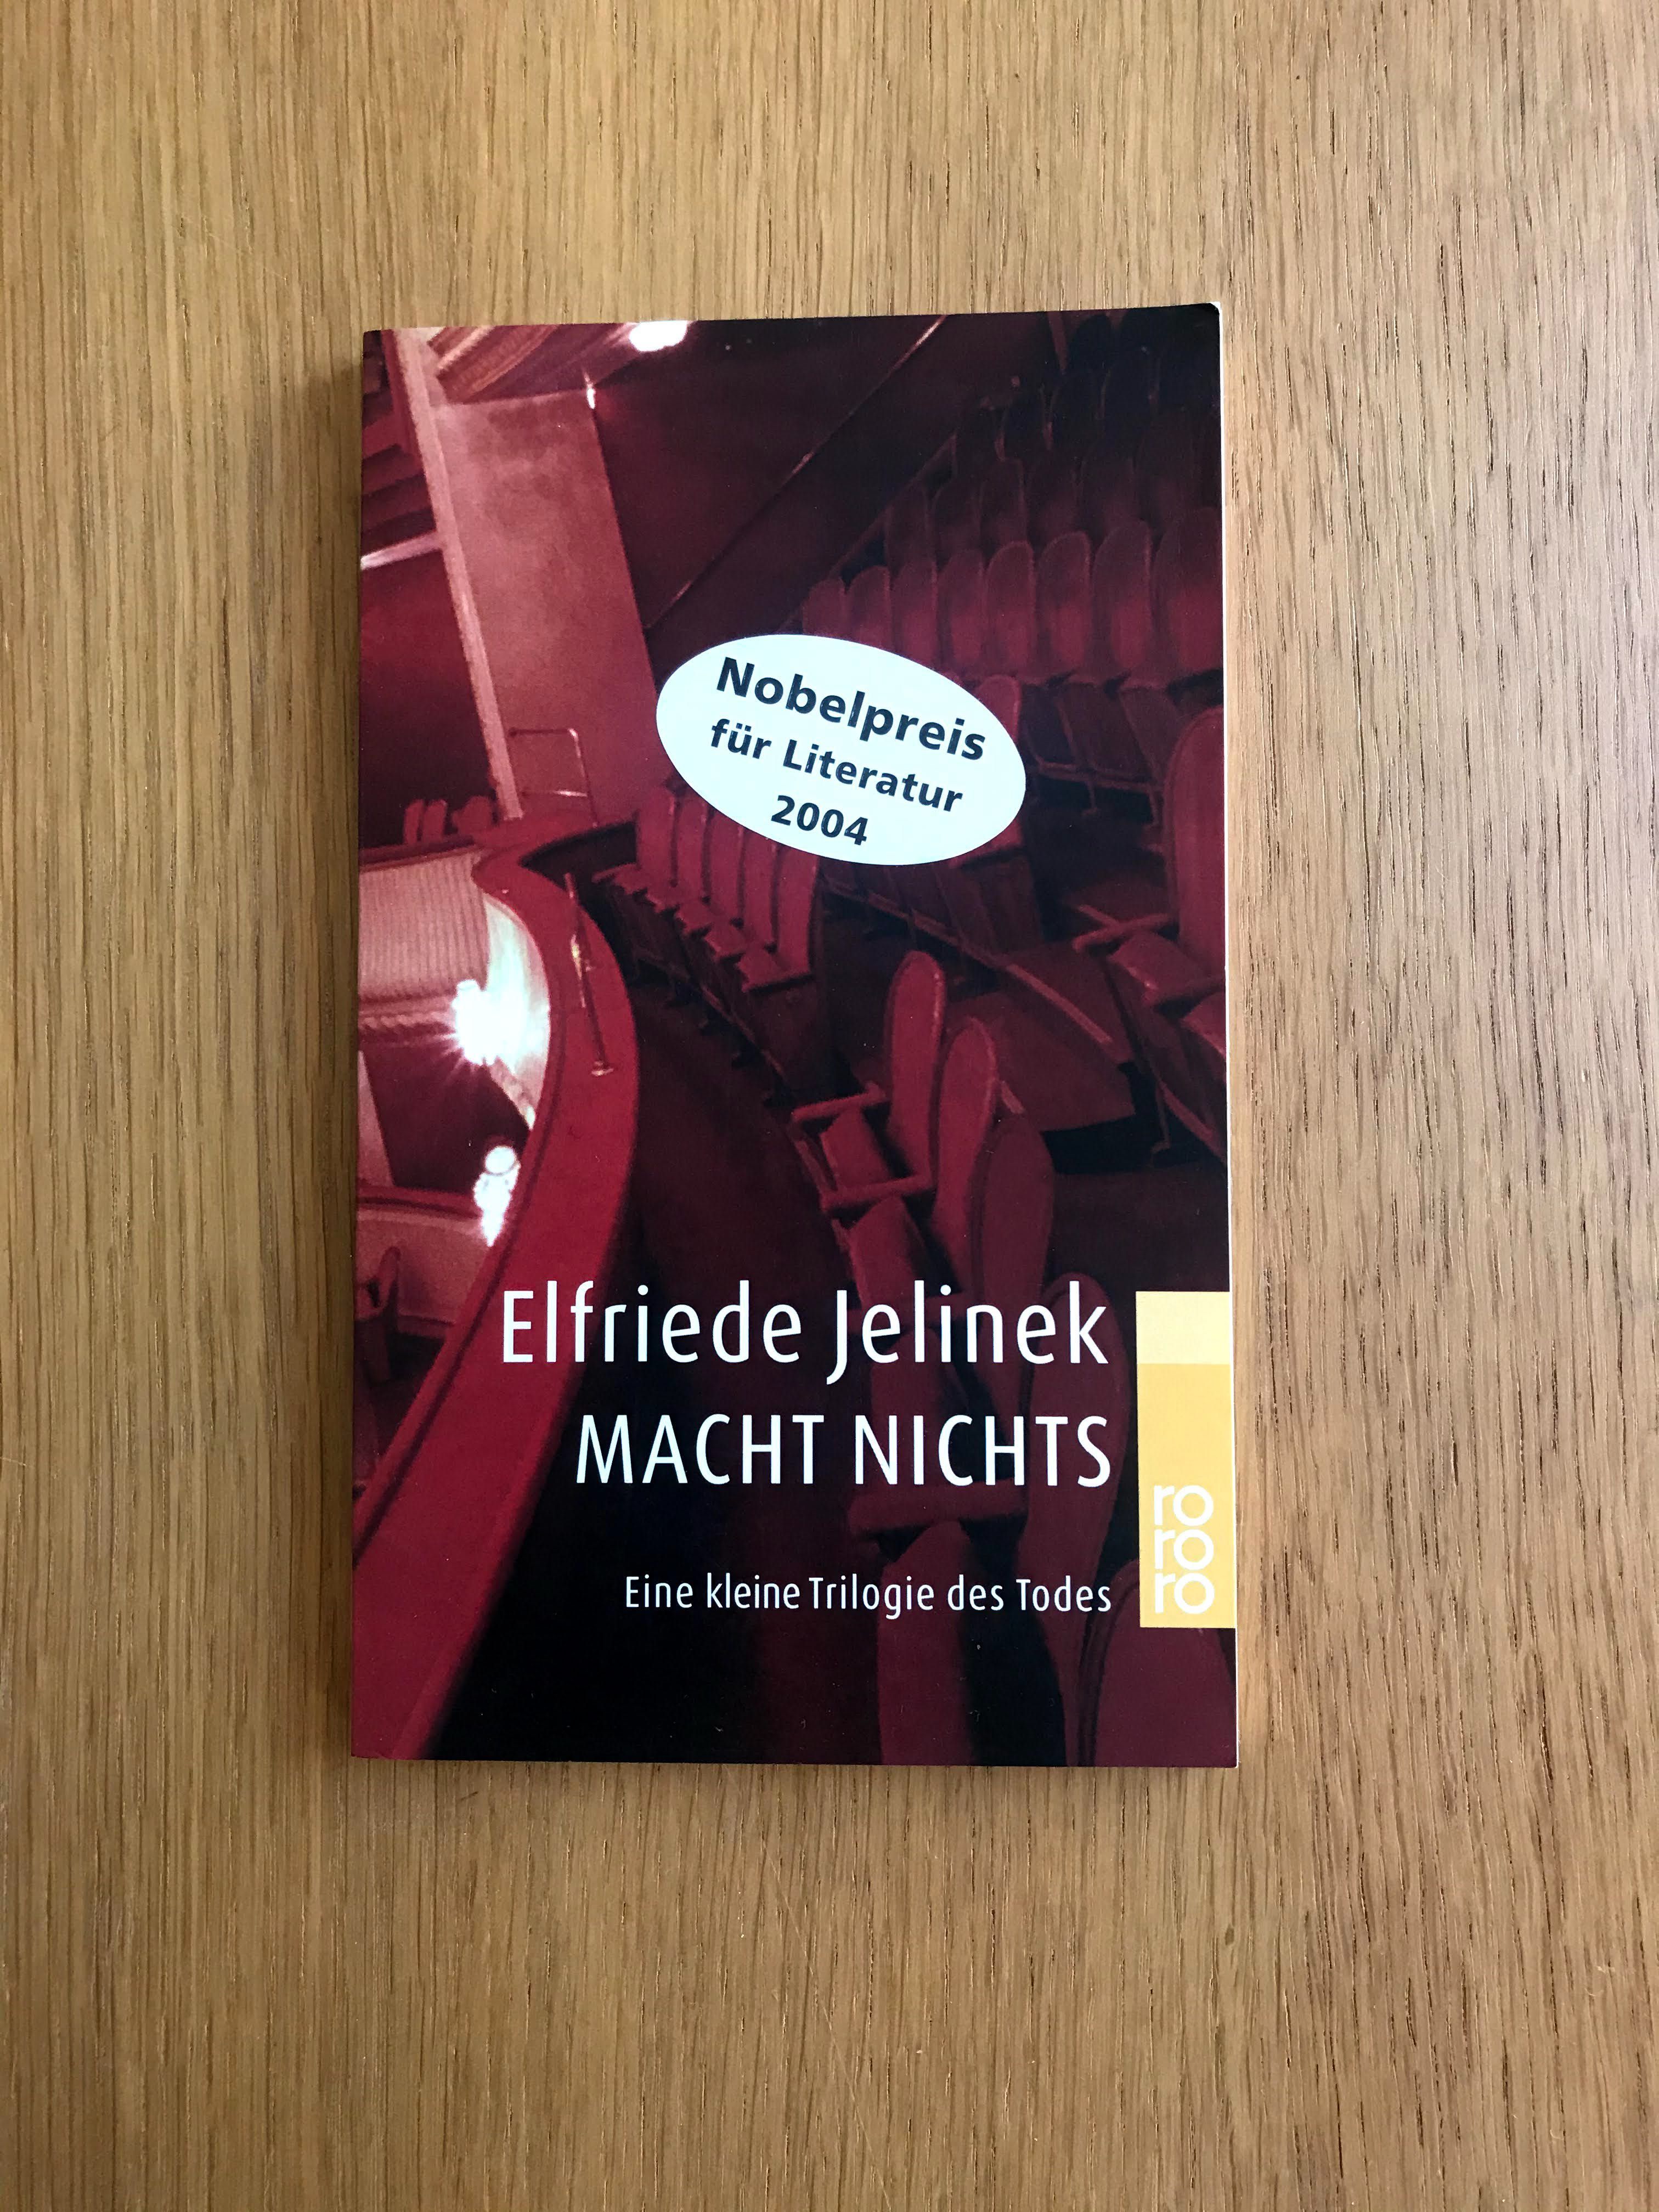 Macht Nichts, de Elfriede Jelinek (Premio Nobel 2004)